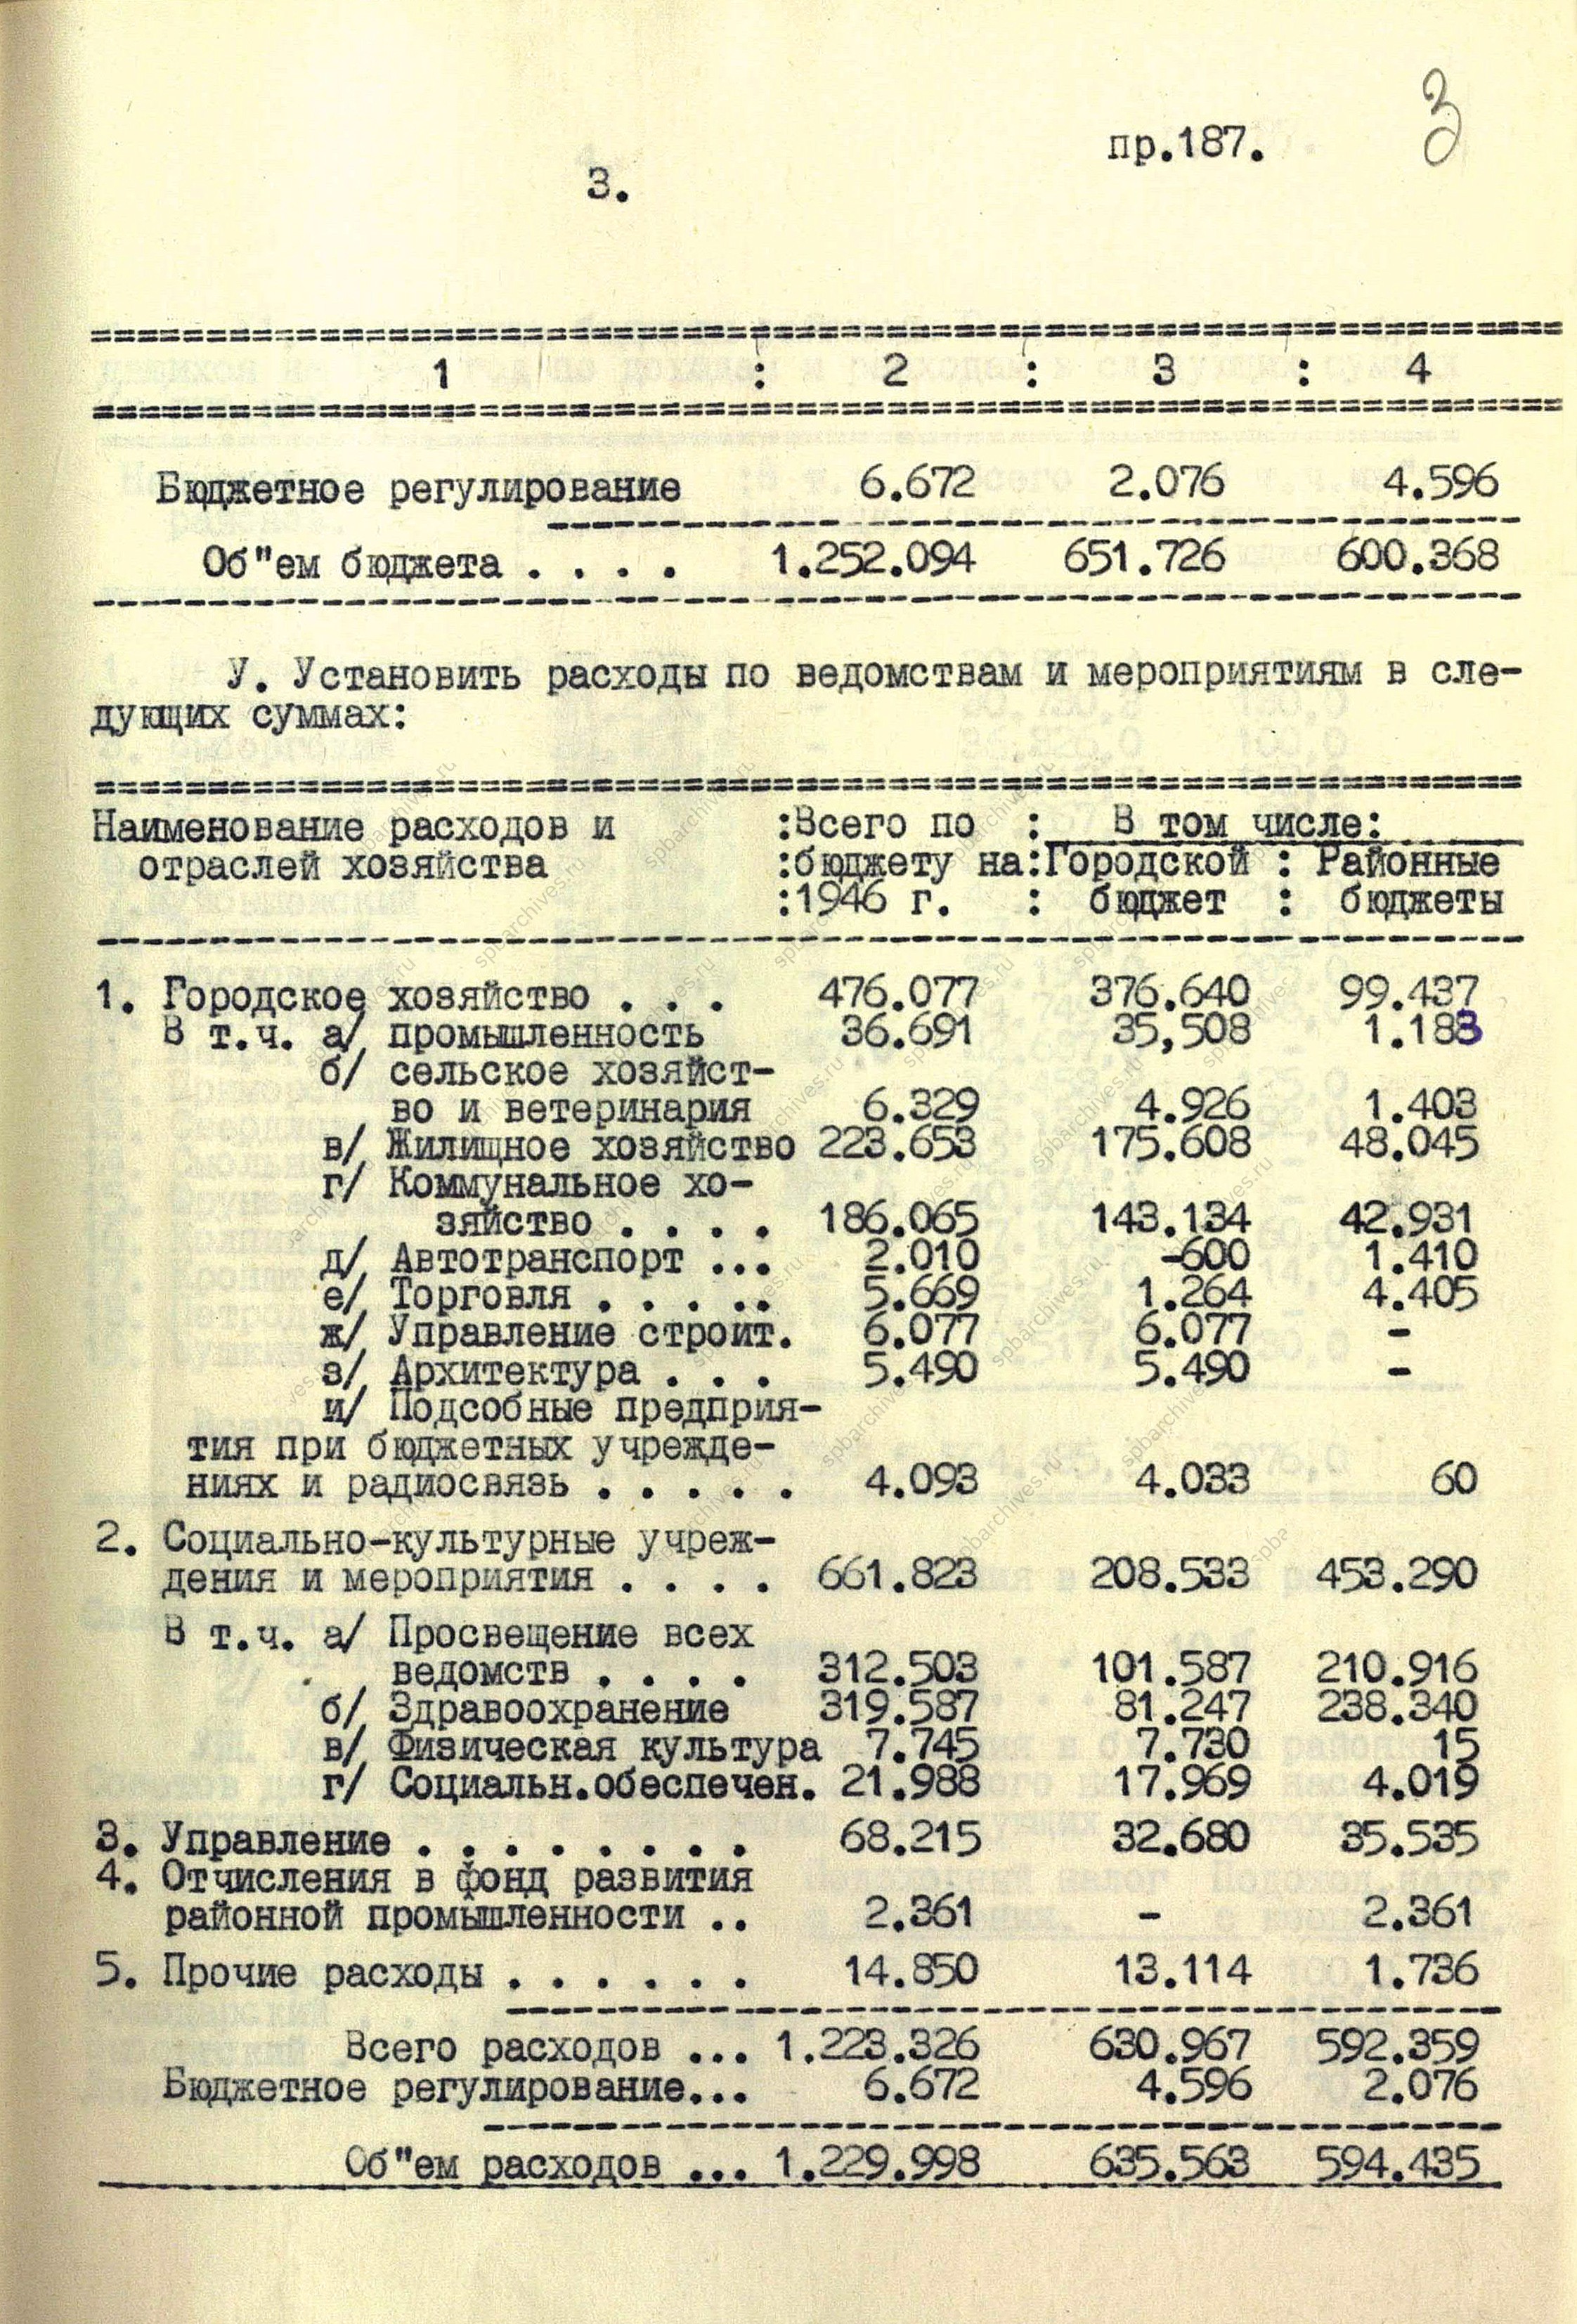 Из протокола заседания Ленгорисполкома – решение «О бюджете Ленинграда на 1946 г. и об исполнении бюджета за 1945 г.».<br />
1 июля 1946 г.<br />
<em>ЦГА СПб. Ф.7384. Оп.25. Д.136. Л.1-6.</em>